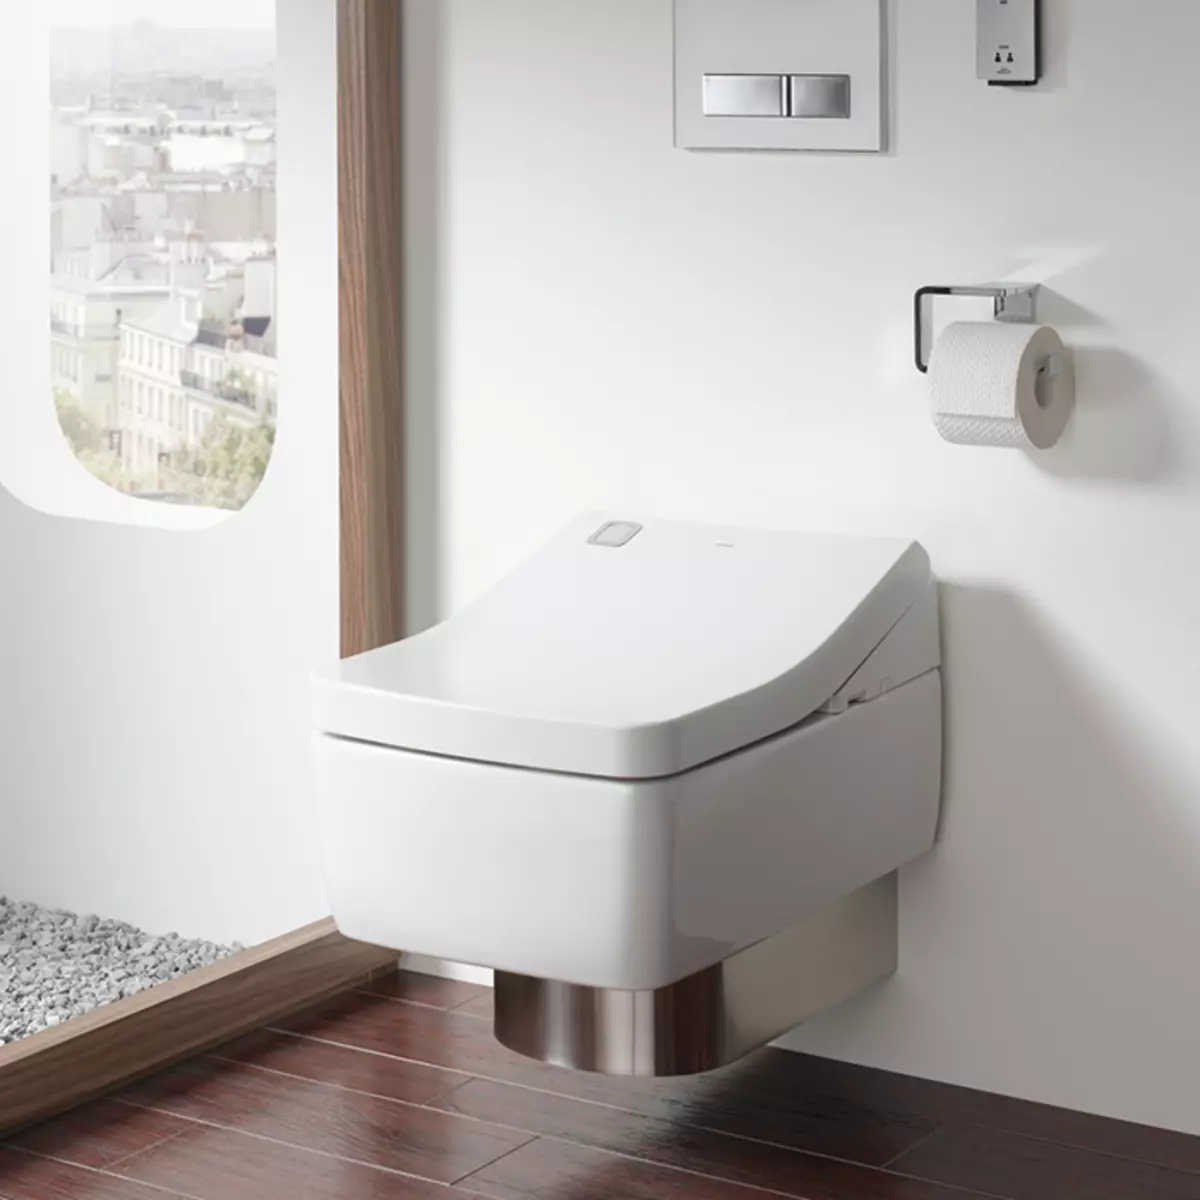 توالت هوشمند: انواع مدل های الکترونیکی با کنترل پنل. توالت های کره ای و توالت های دیگر تولید کنندگان 10467_24